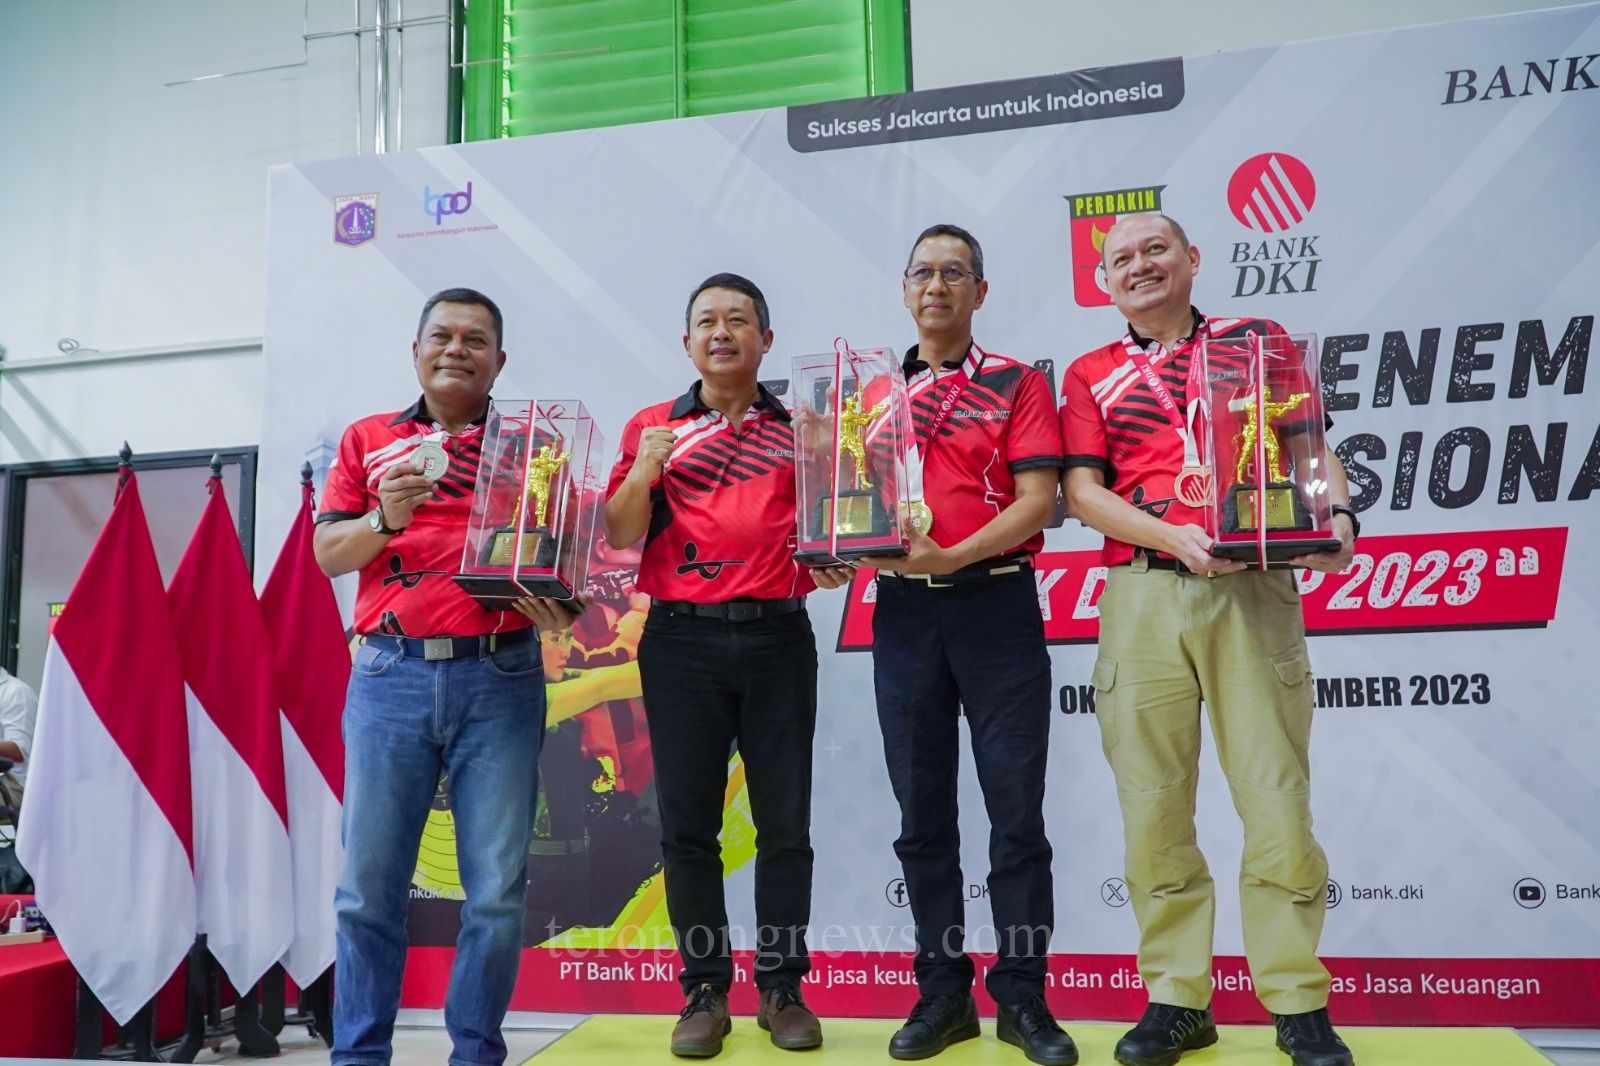 Perbakin dan Bank DKI Gelar Kejuaraan Menembak Nasional Bank DKI Cup 2023